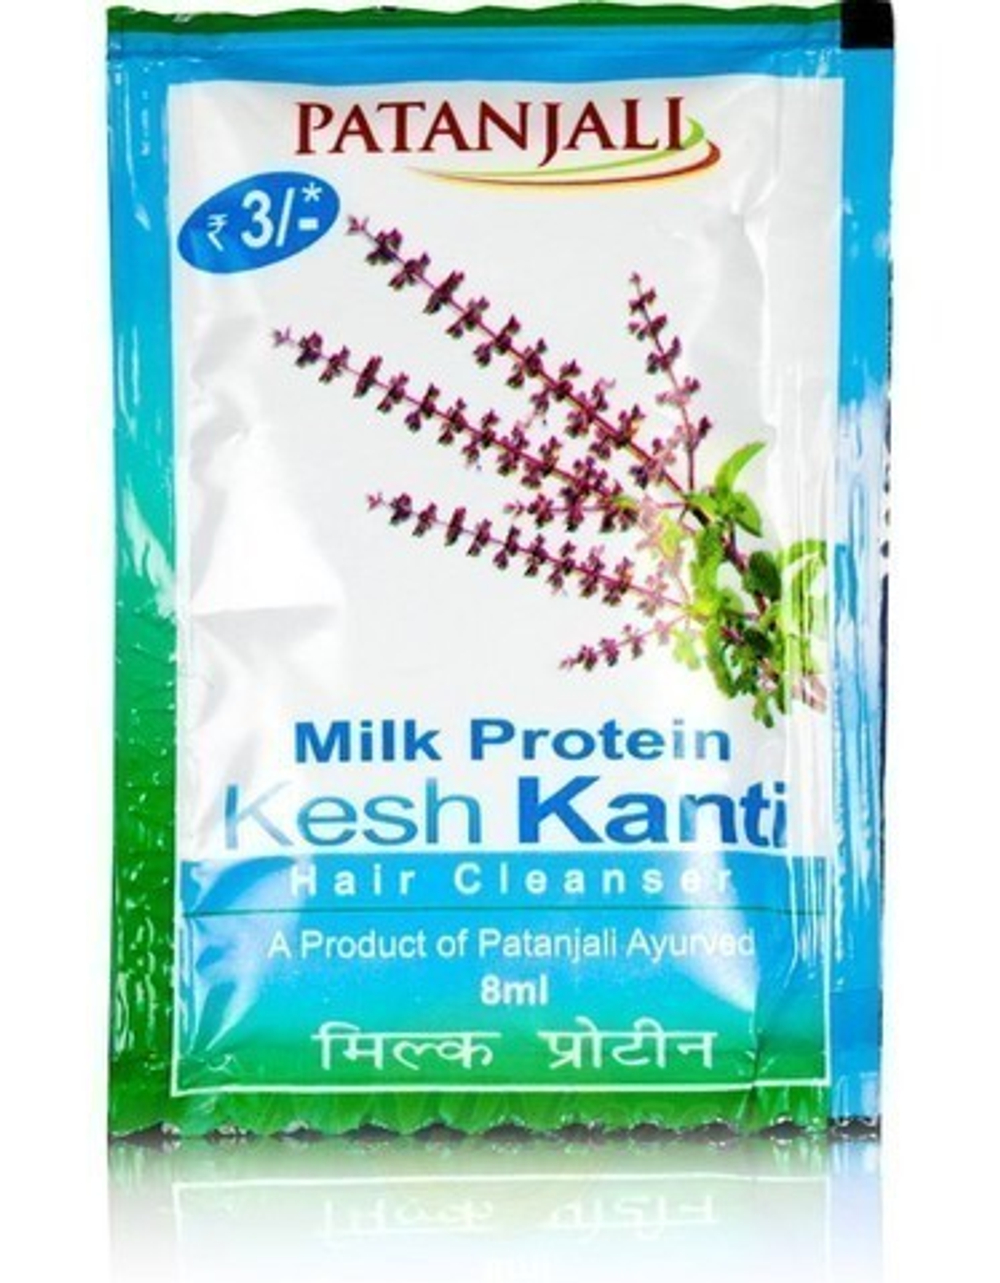 Шампунь Patanjali Kesh Kanti Milk Protein, восстановление поврежденных и окрашенных волос, 8 мл.